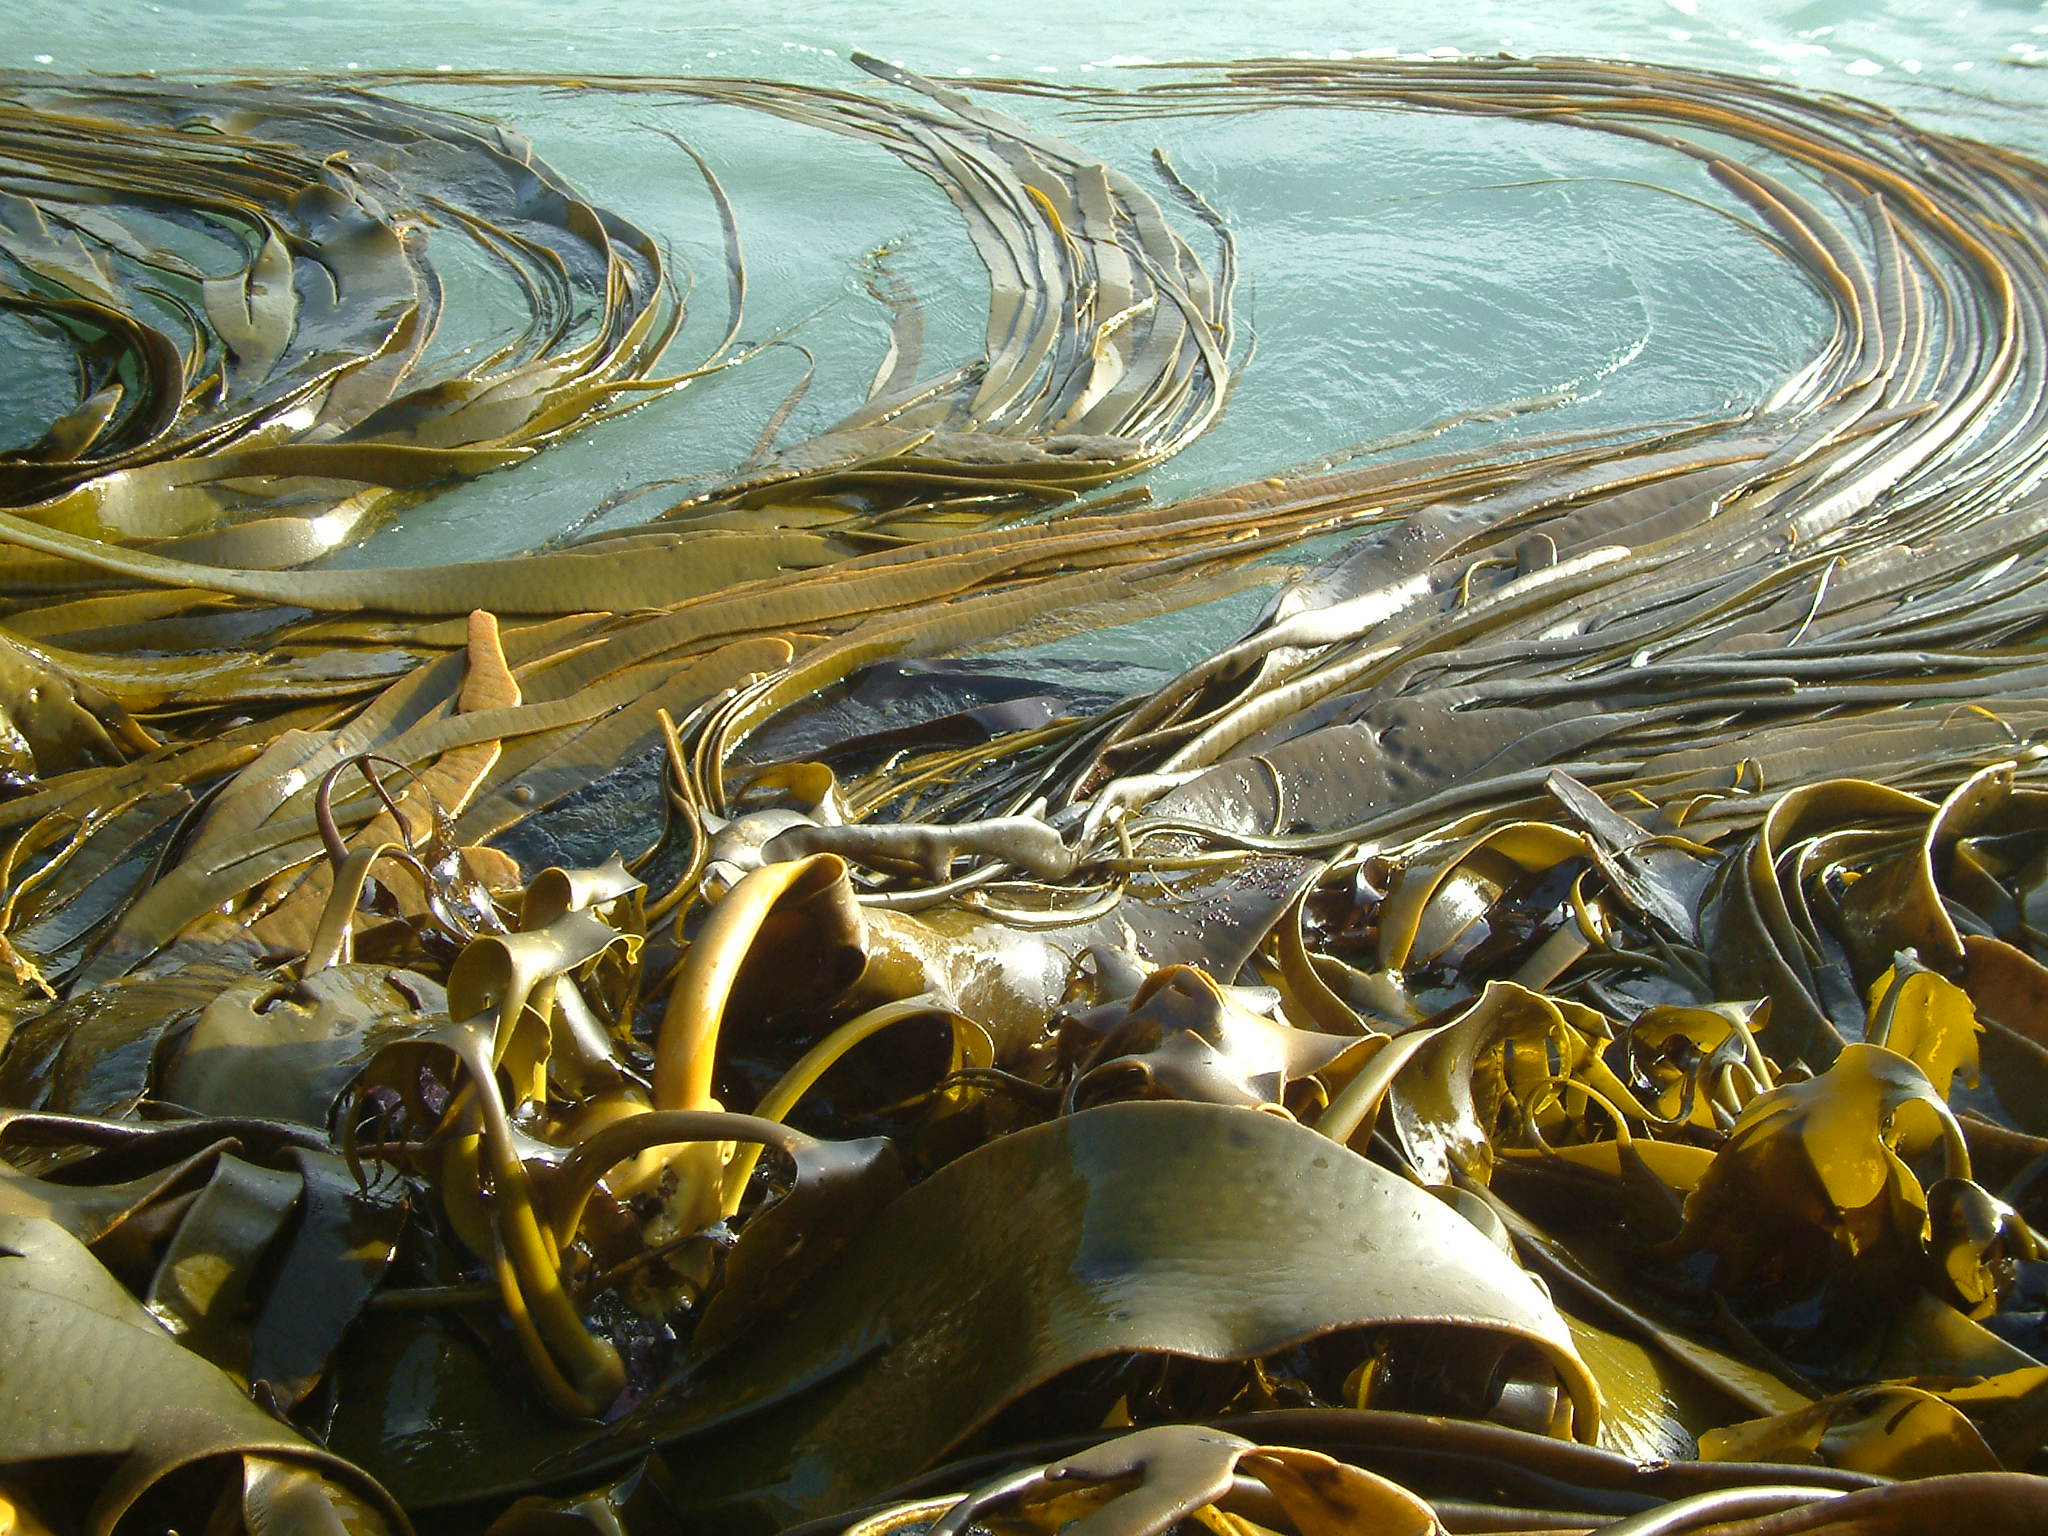 Kelp’s record journey exposes Antarctic ecosystems to change